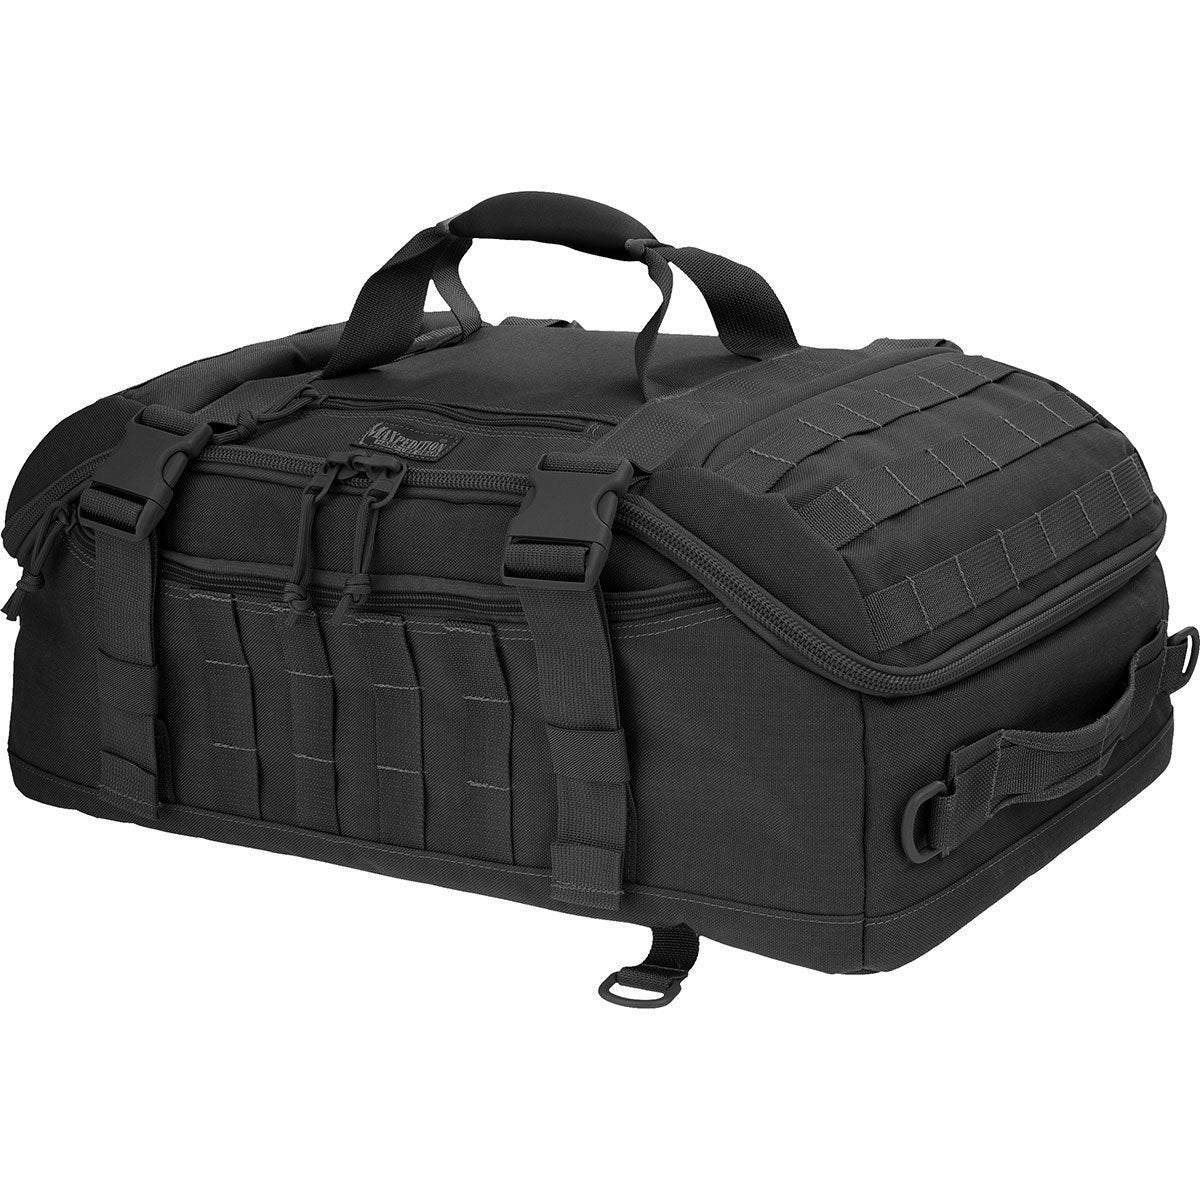 Maxpedition Fliegerduffel Adventure Duffle Bag and Backpack Black Tactical Distributors Ltd New Zealand